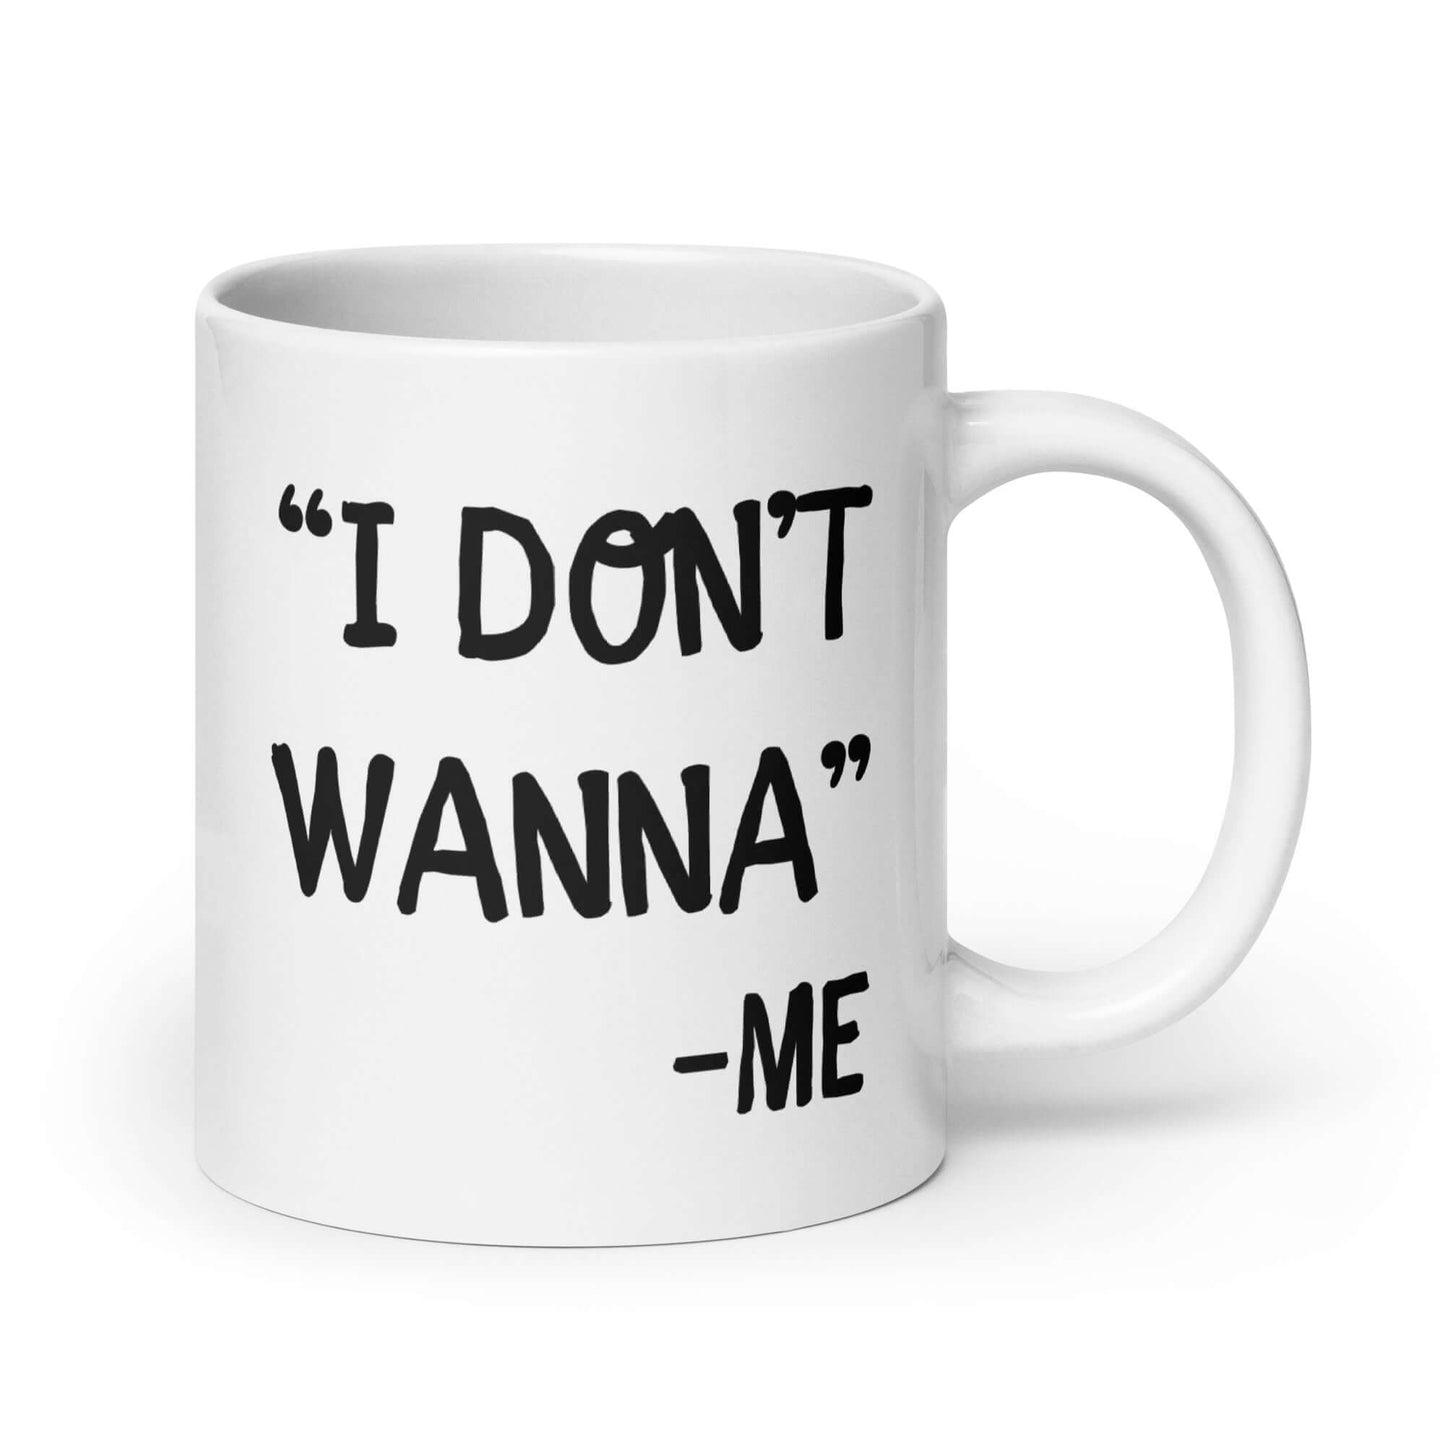 I don't wanna funny quote mug